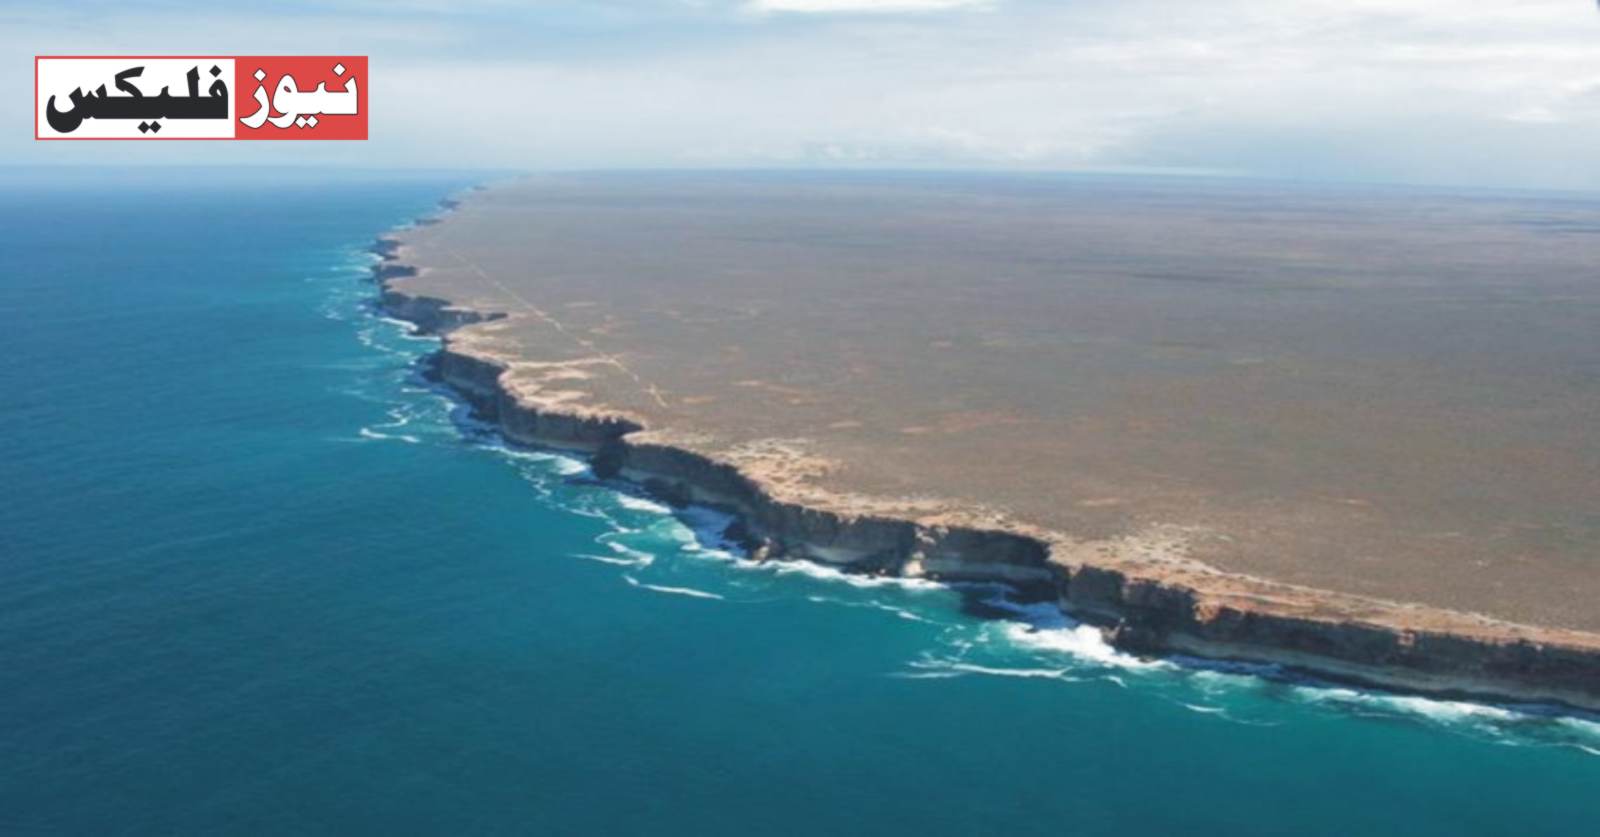 آسٹریلیا میں زمین کے اختتام کی آخری حد والی تصویر سوشل میڈیا پر وائرل ہو رہی ہے